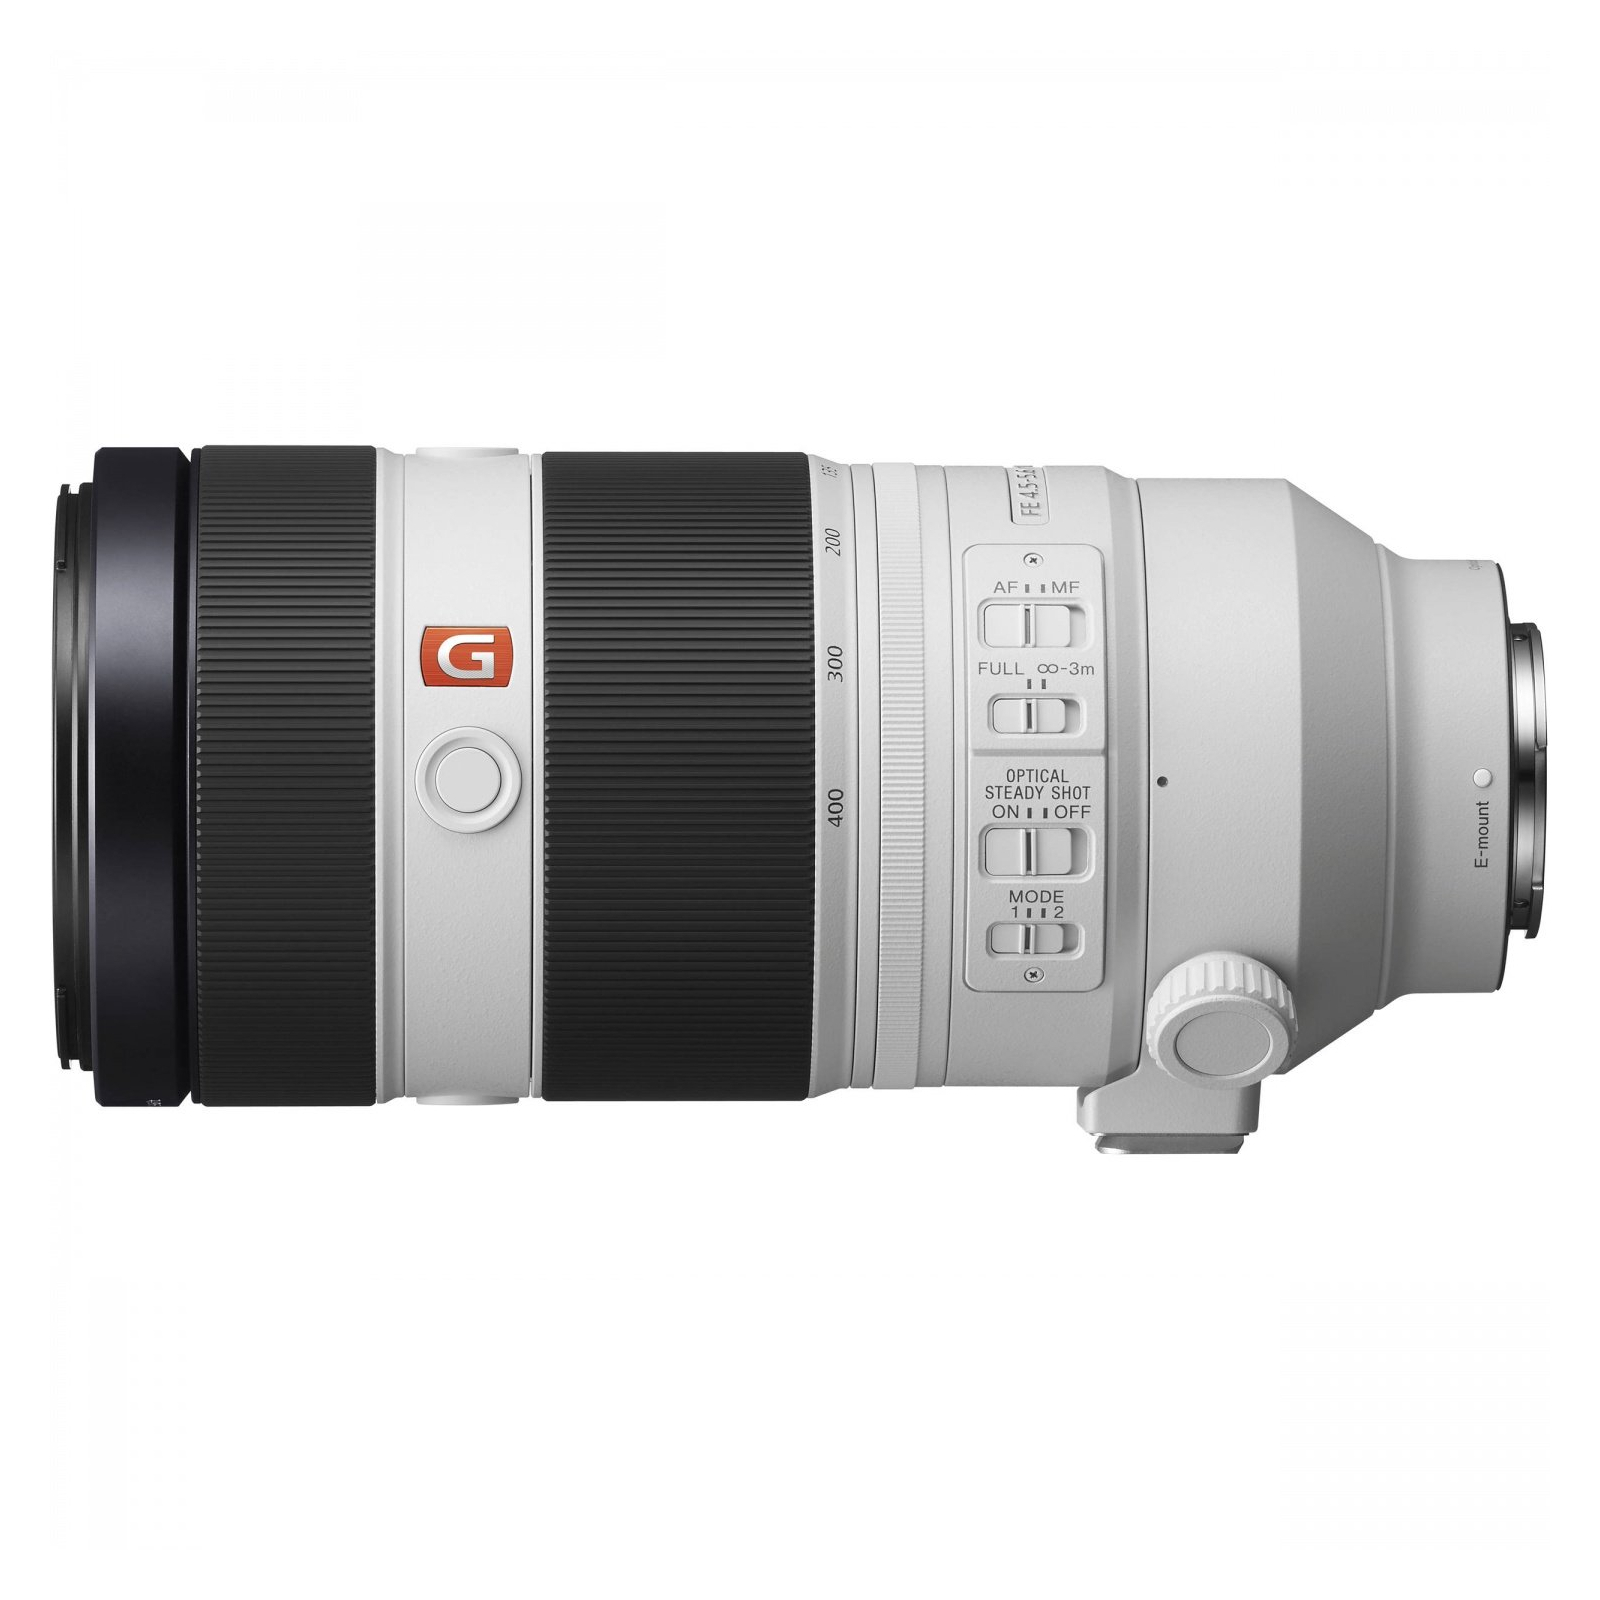 Об'єктив Sony 100-400mm, f/4.5-5.6 GM OSS для камер NEX FF (SEL100400GM.SYX) зображення 6